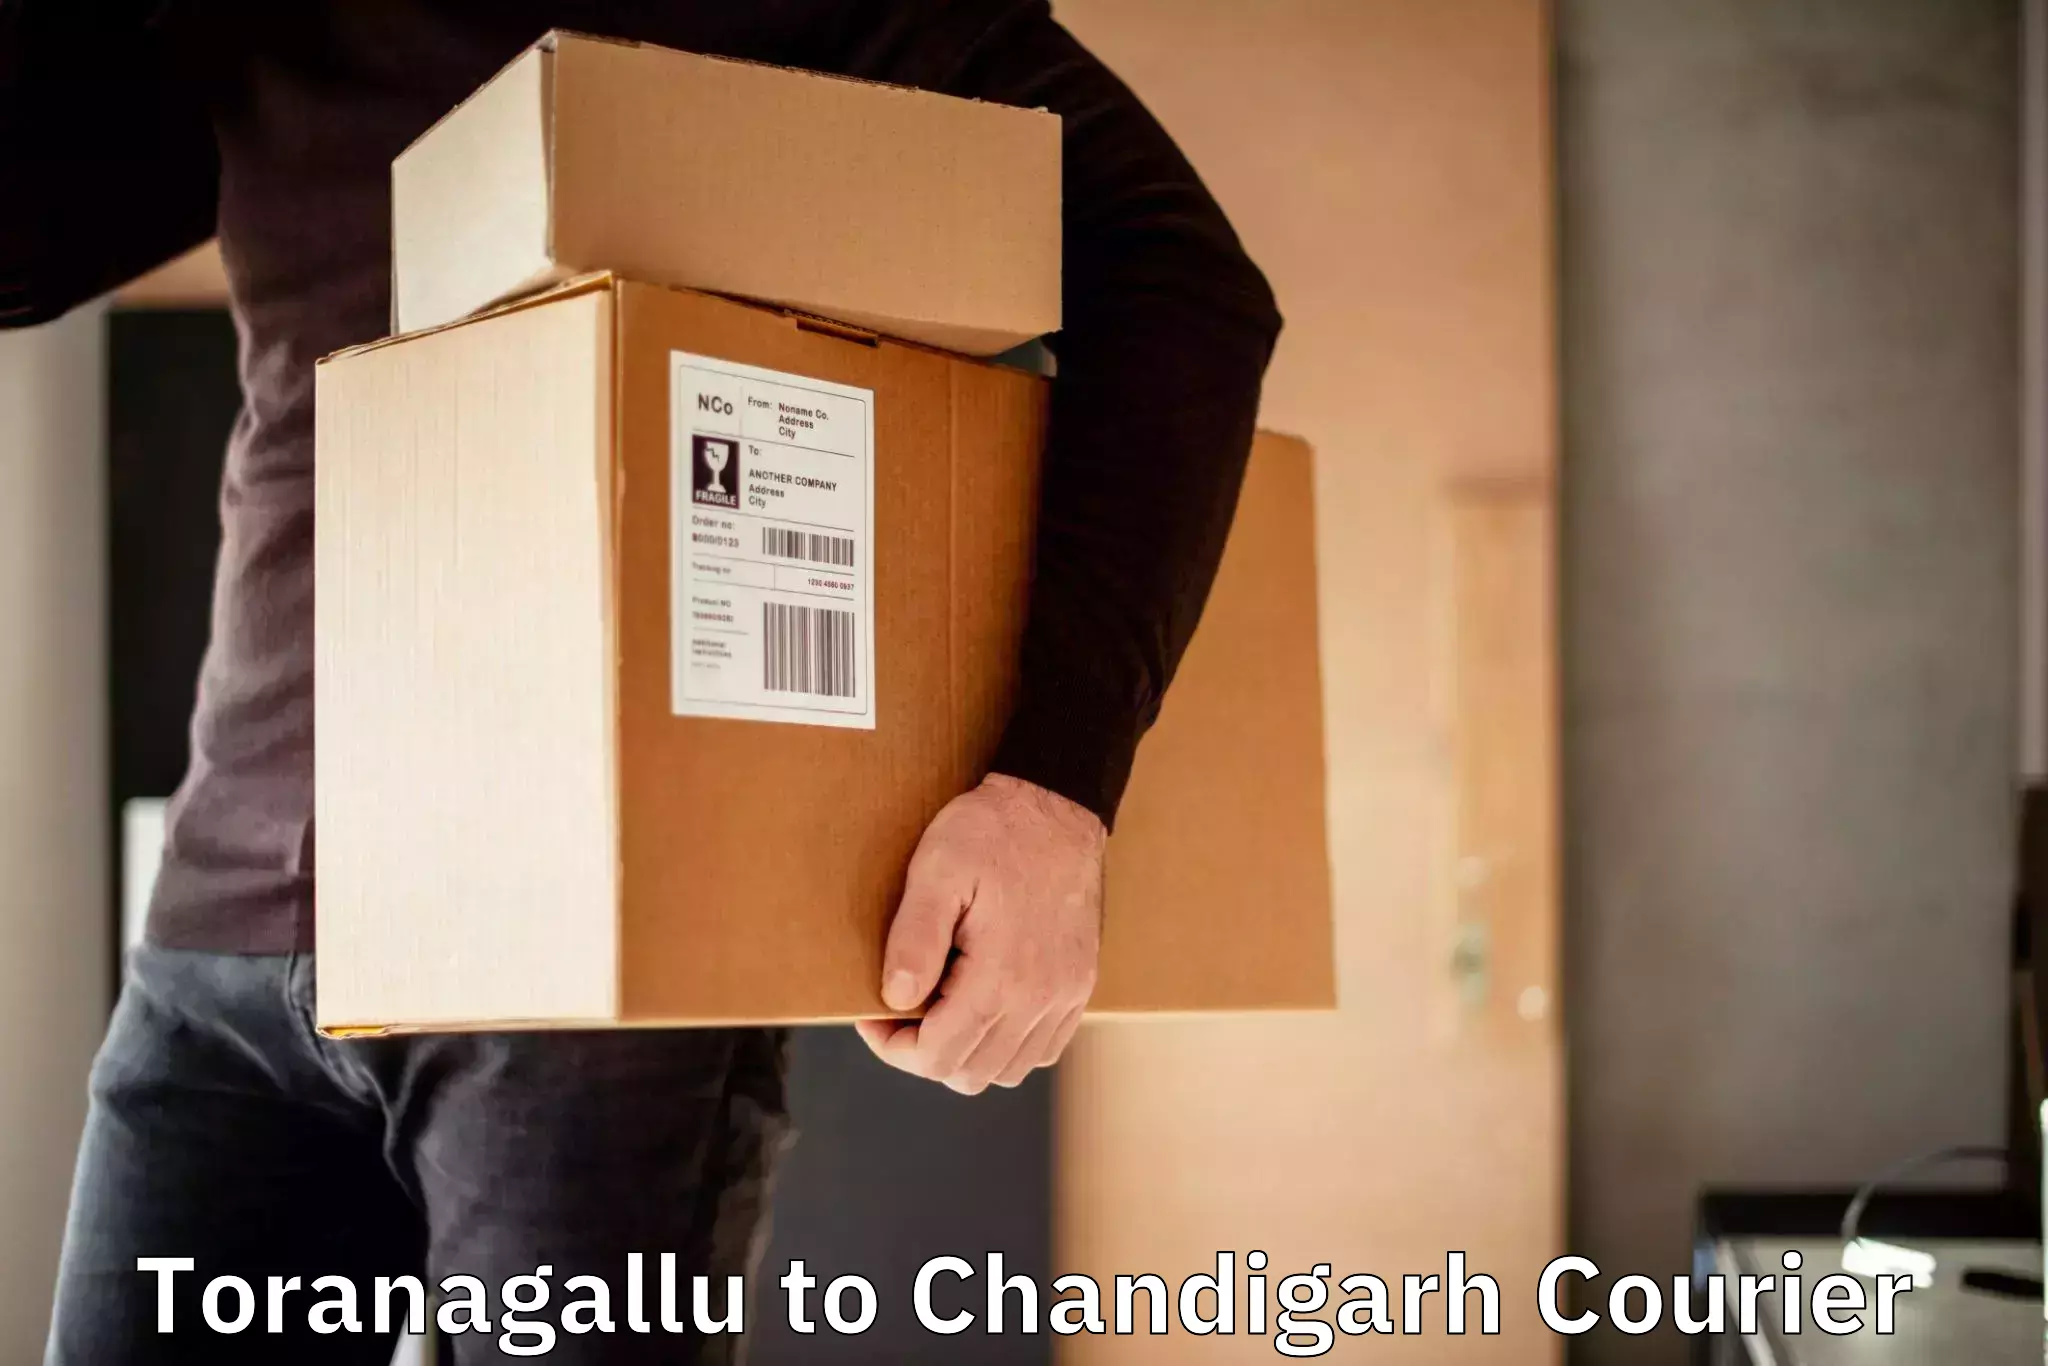 Efficient freight service Toranagallu to Chandigarh